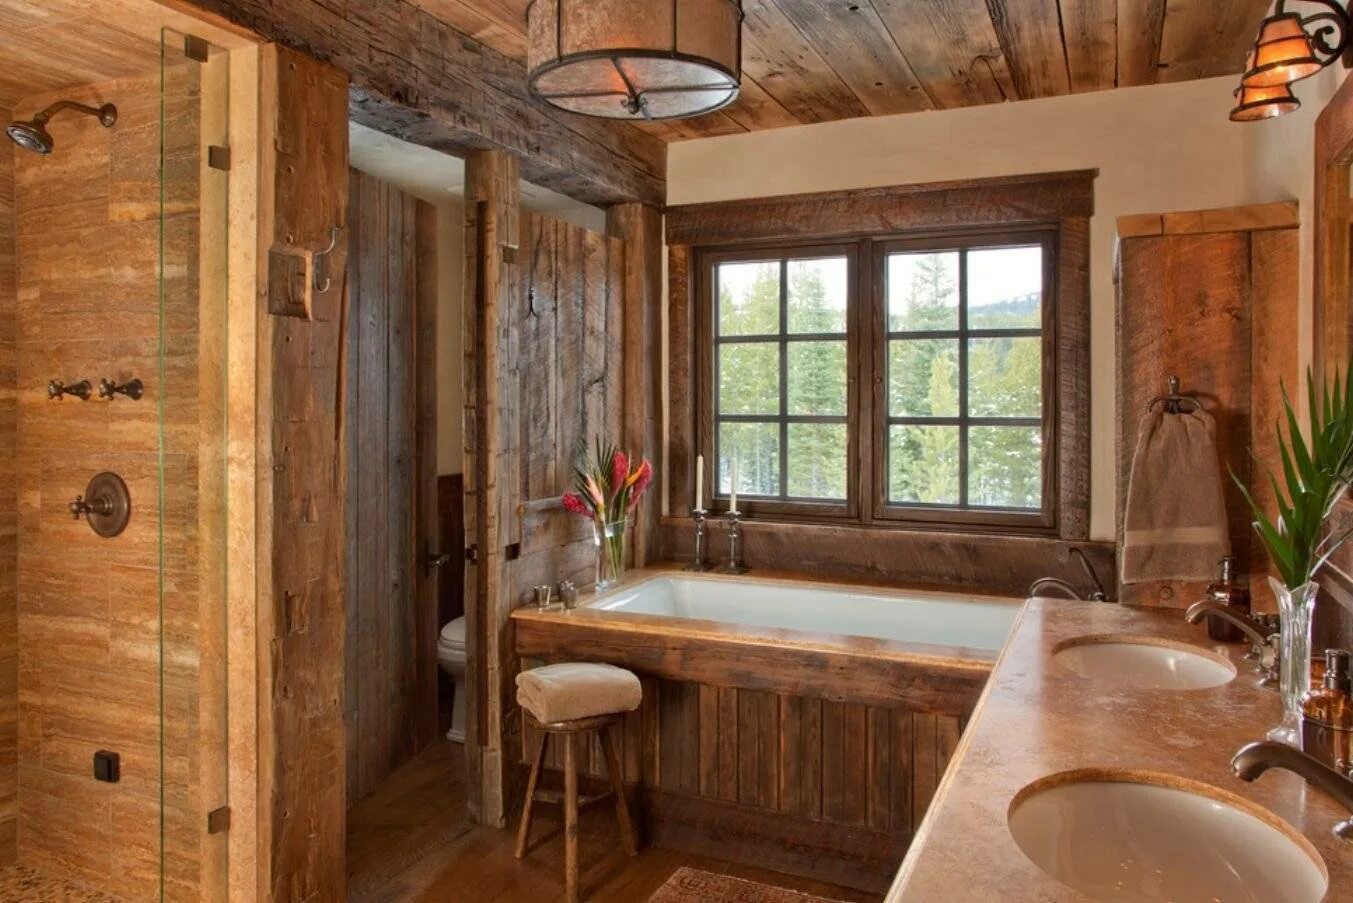 Отделка деревянной комнаты. Ванная в деревянном стиле. Ванная в деревенском стиле. Ванная втжеревянном стиле. Ванная отделанная деревом.